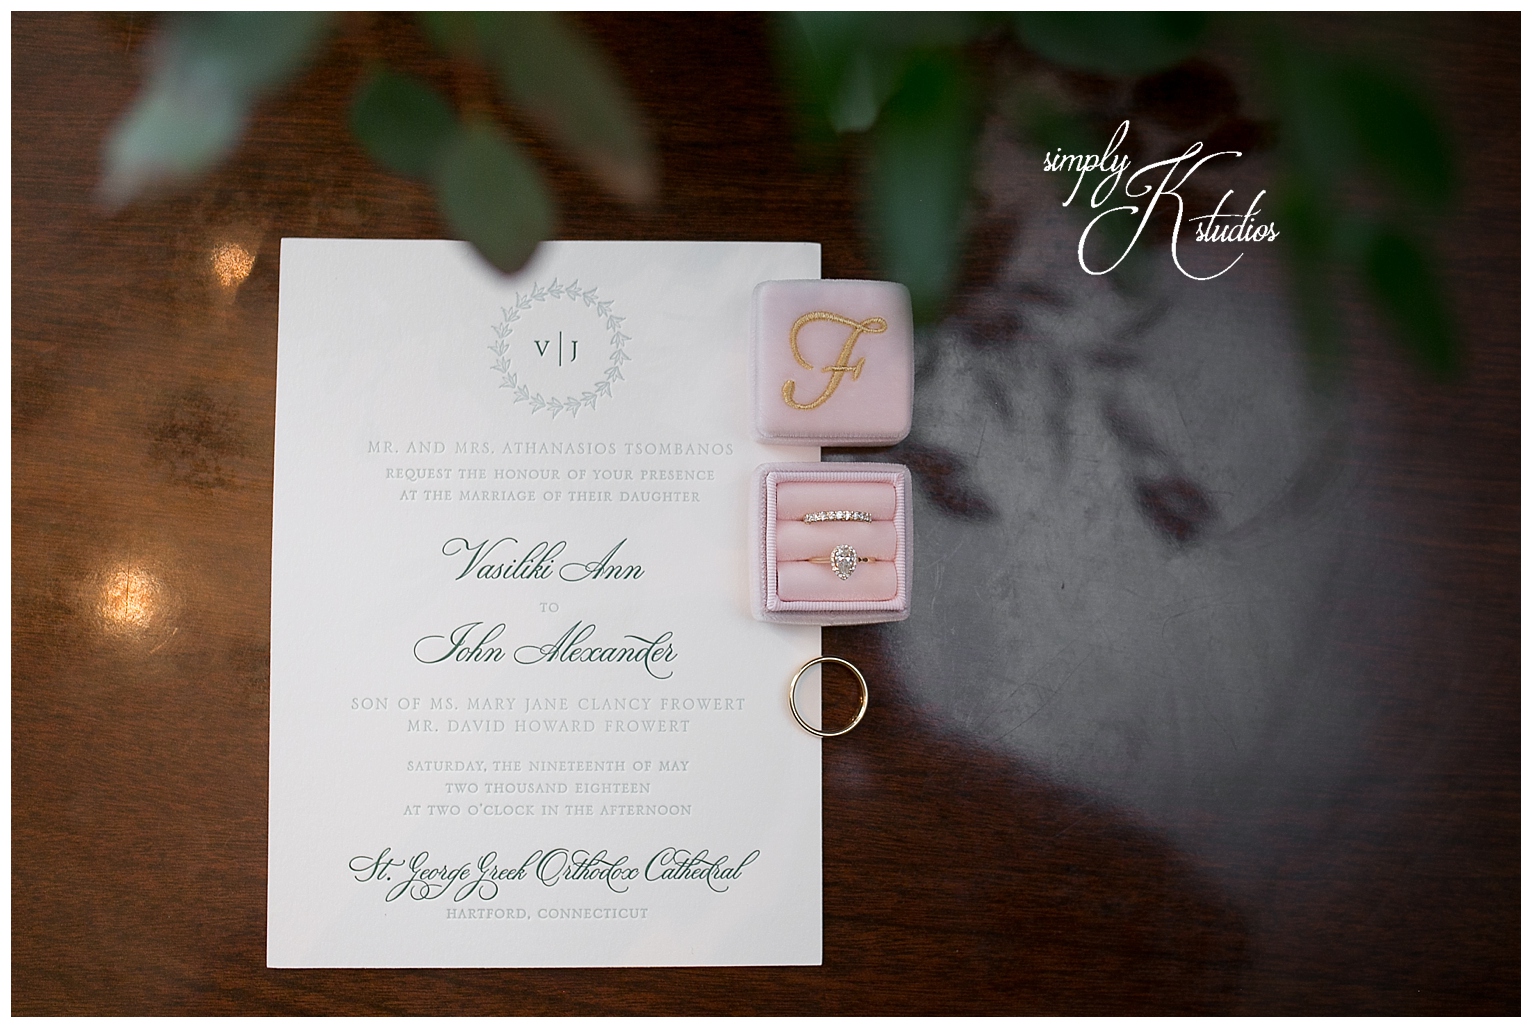 Wedding Invitations by Marissa Allie Designs.jpg